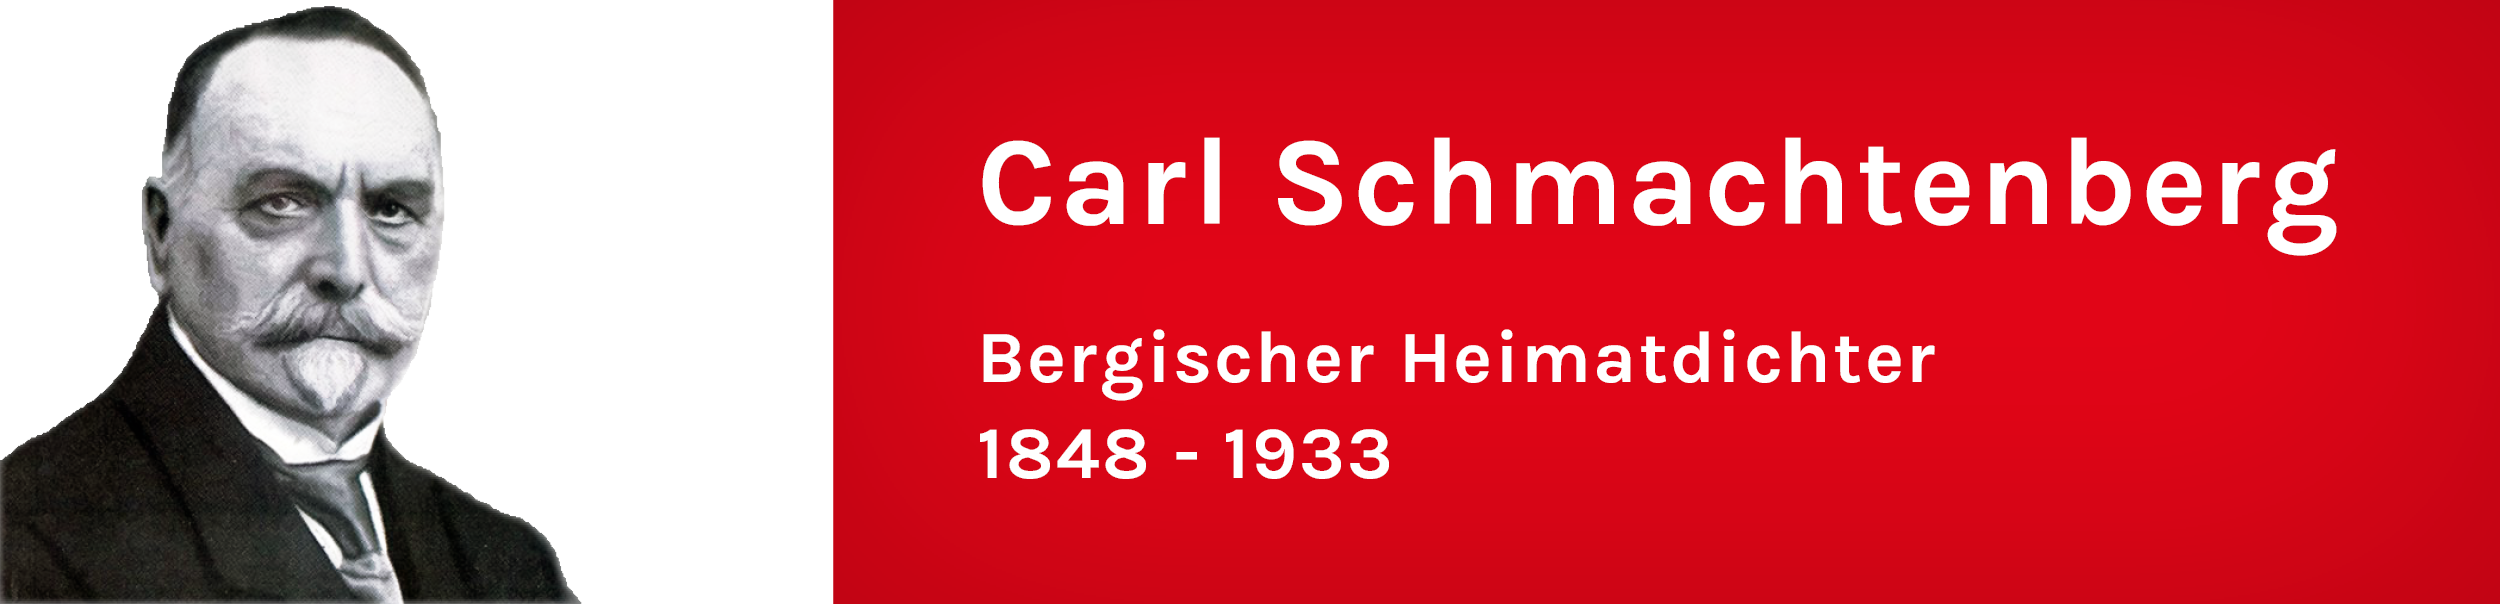 Andenken an Carl Schmachtenberg